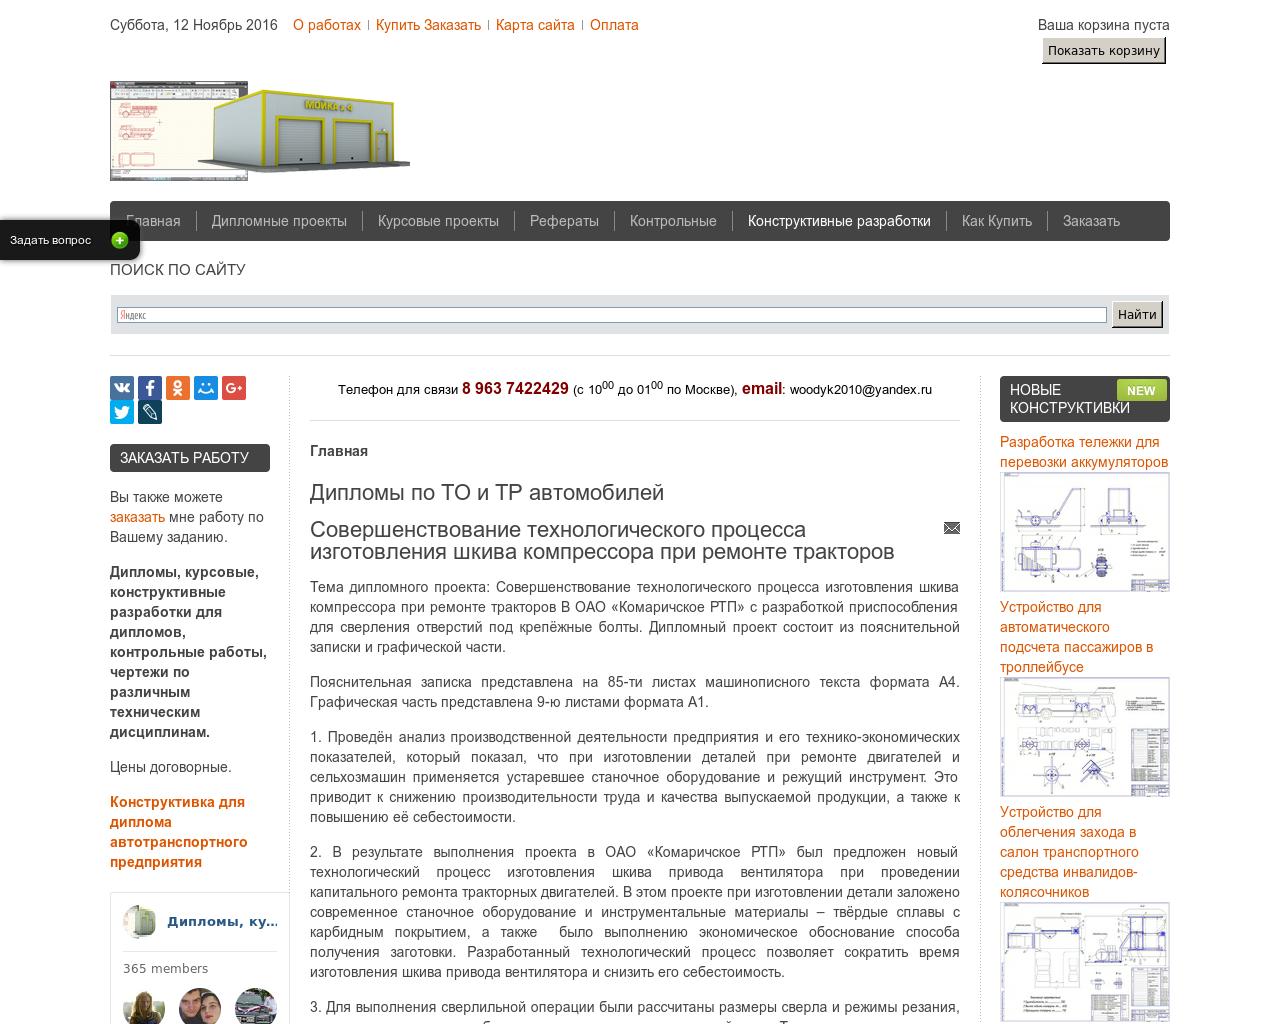 Изображение сайта diplom89.ru в разрешении 1280x1024